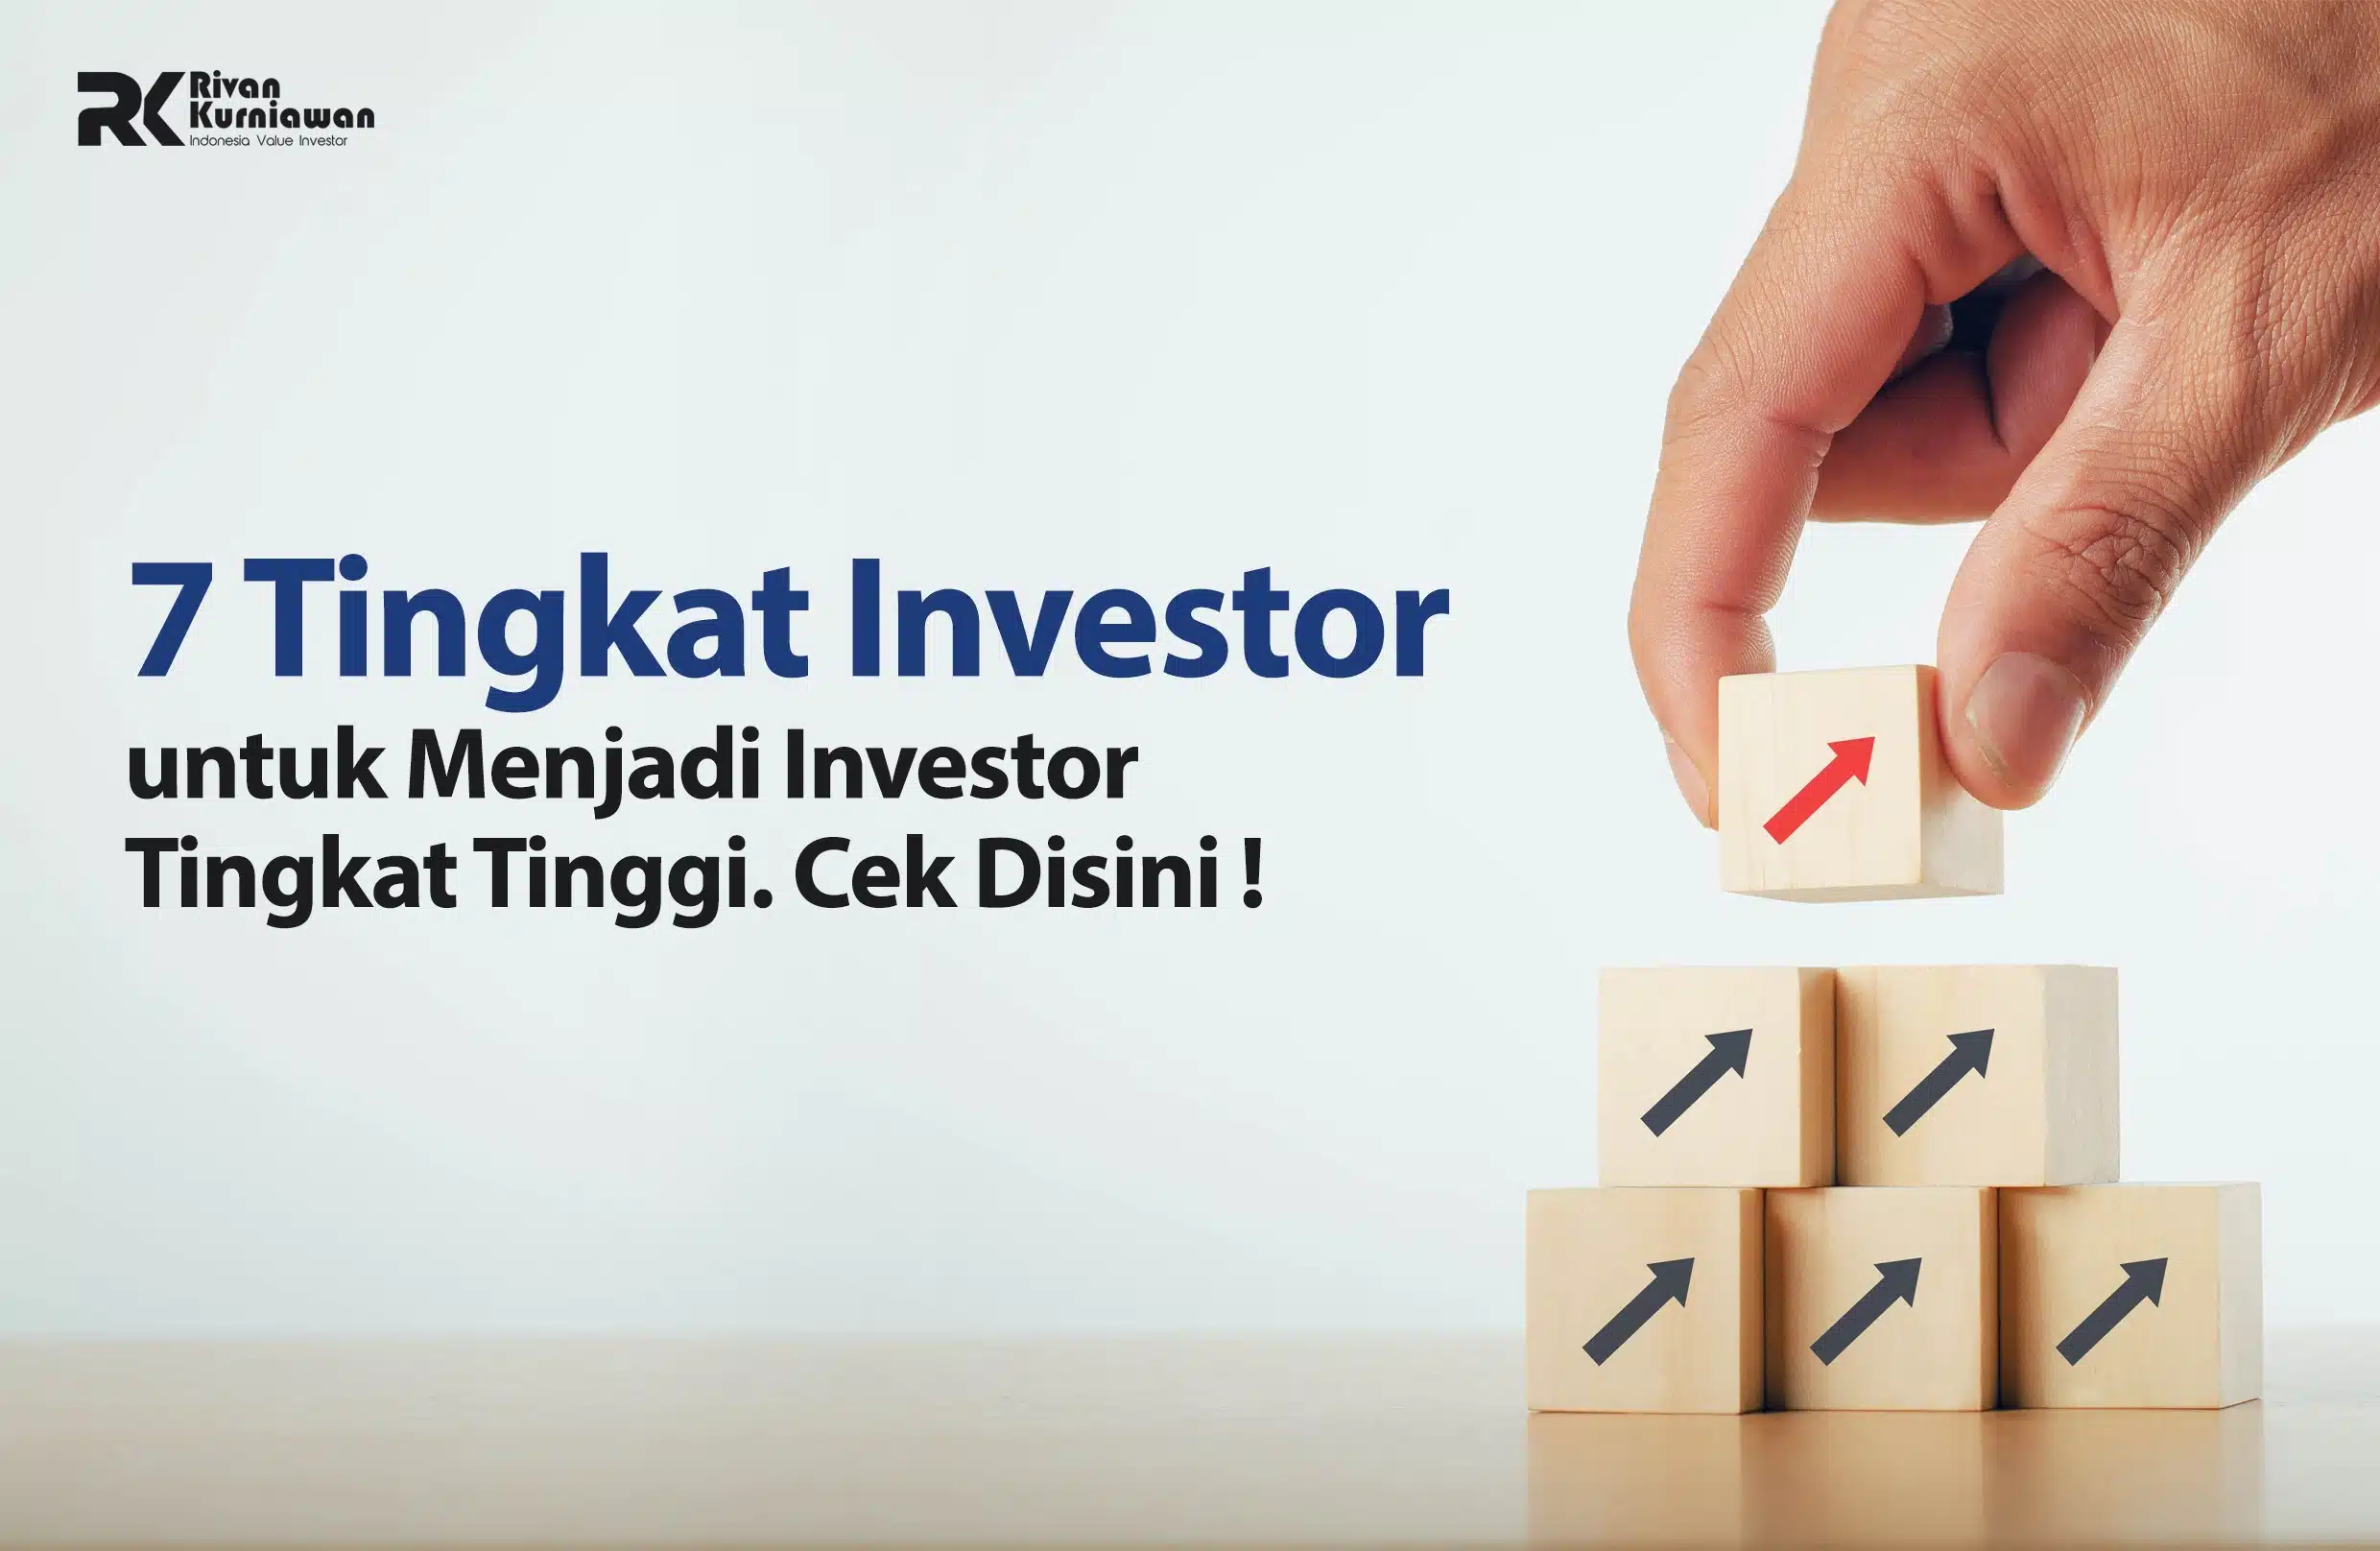 7 Tingkat Investor